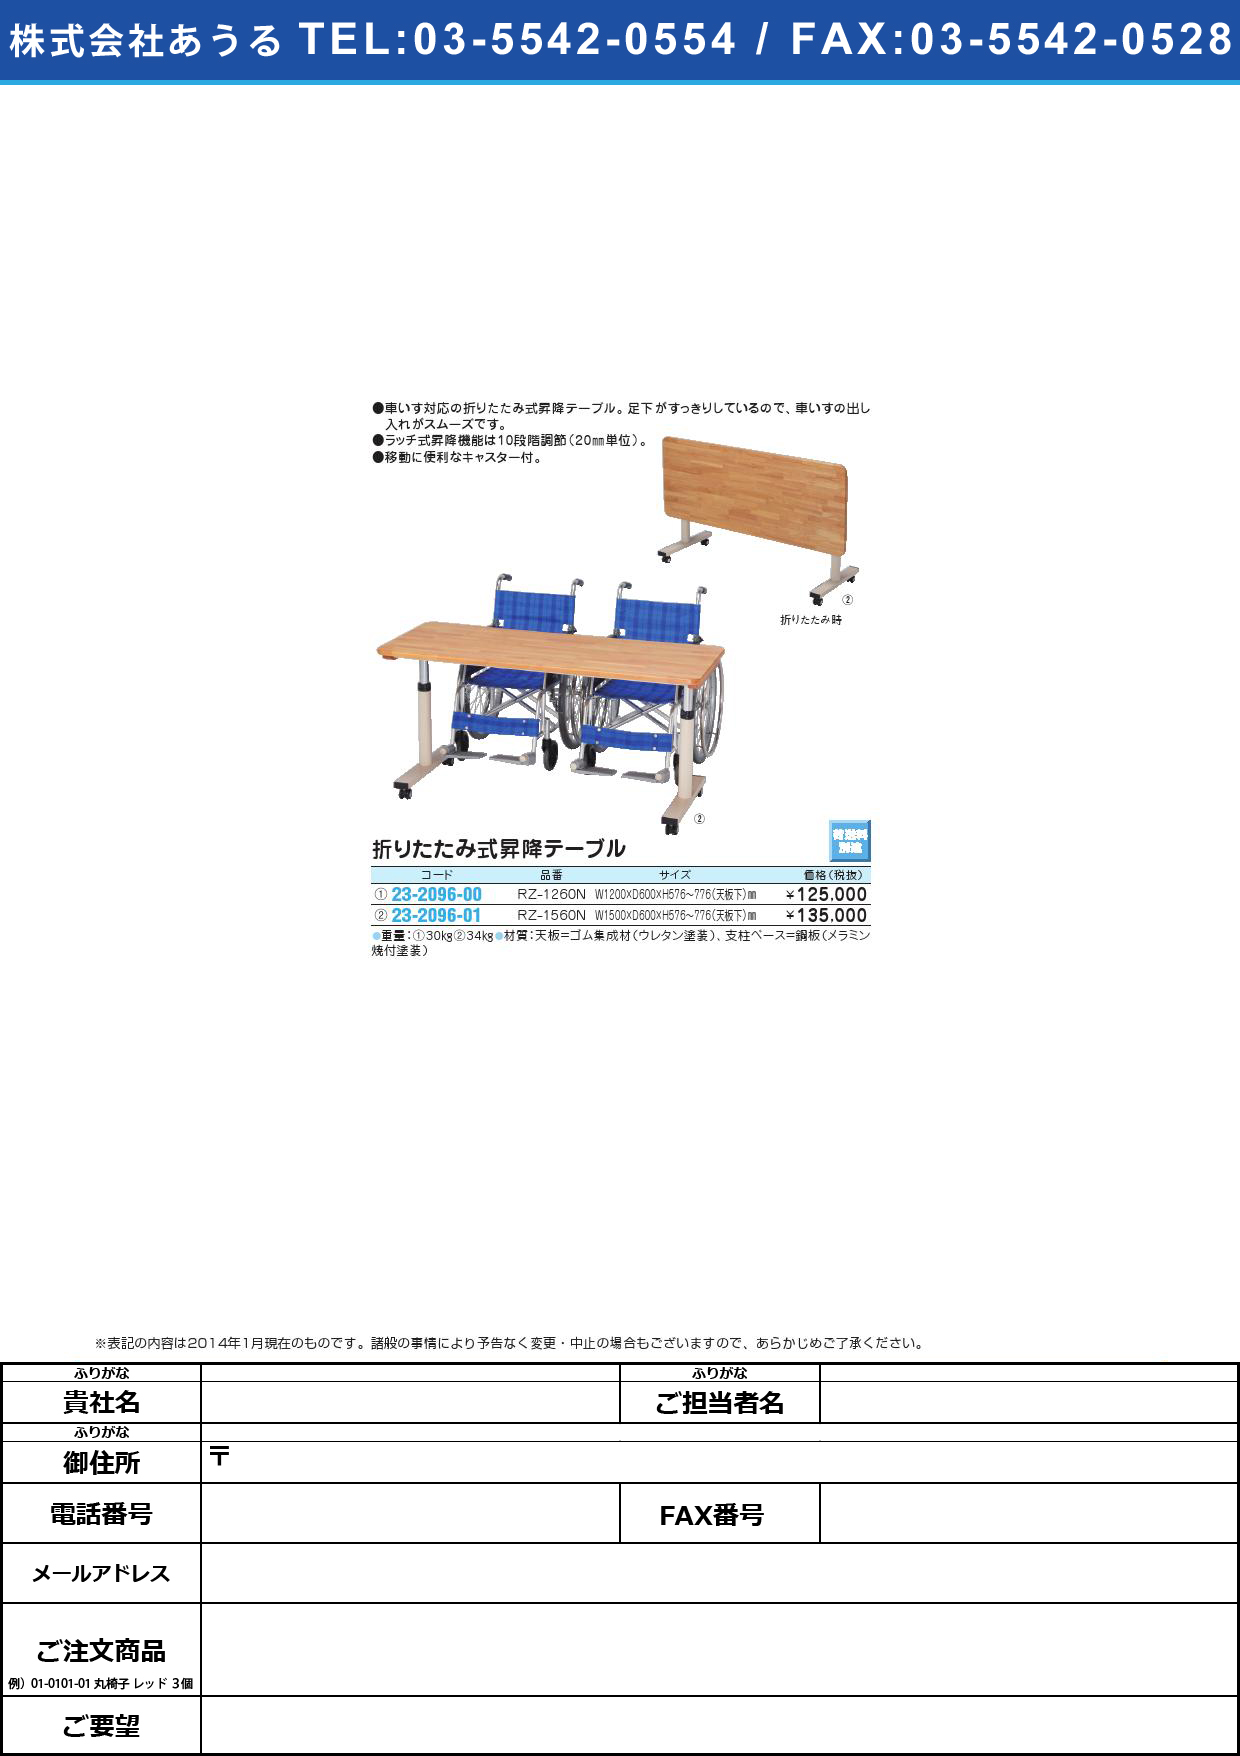 (23-2096-01)折りたたみ式昇降テーブル ｵﾘﾀﾀﾐｼｷｼｮｳｺｳﾃｰﾌﾞﾙ(23-2096-01)RZ-1560N(W1500XD600)【1台単位】【2014年カタログ商品】